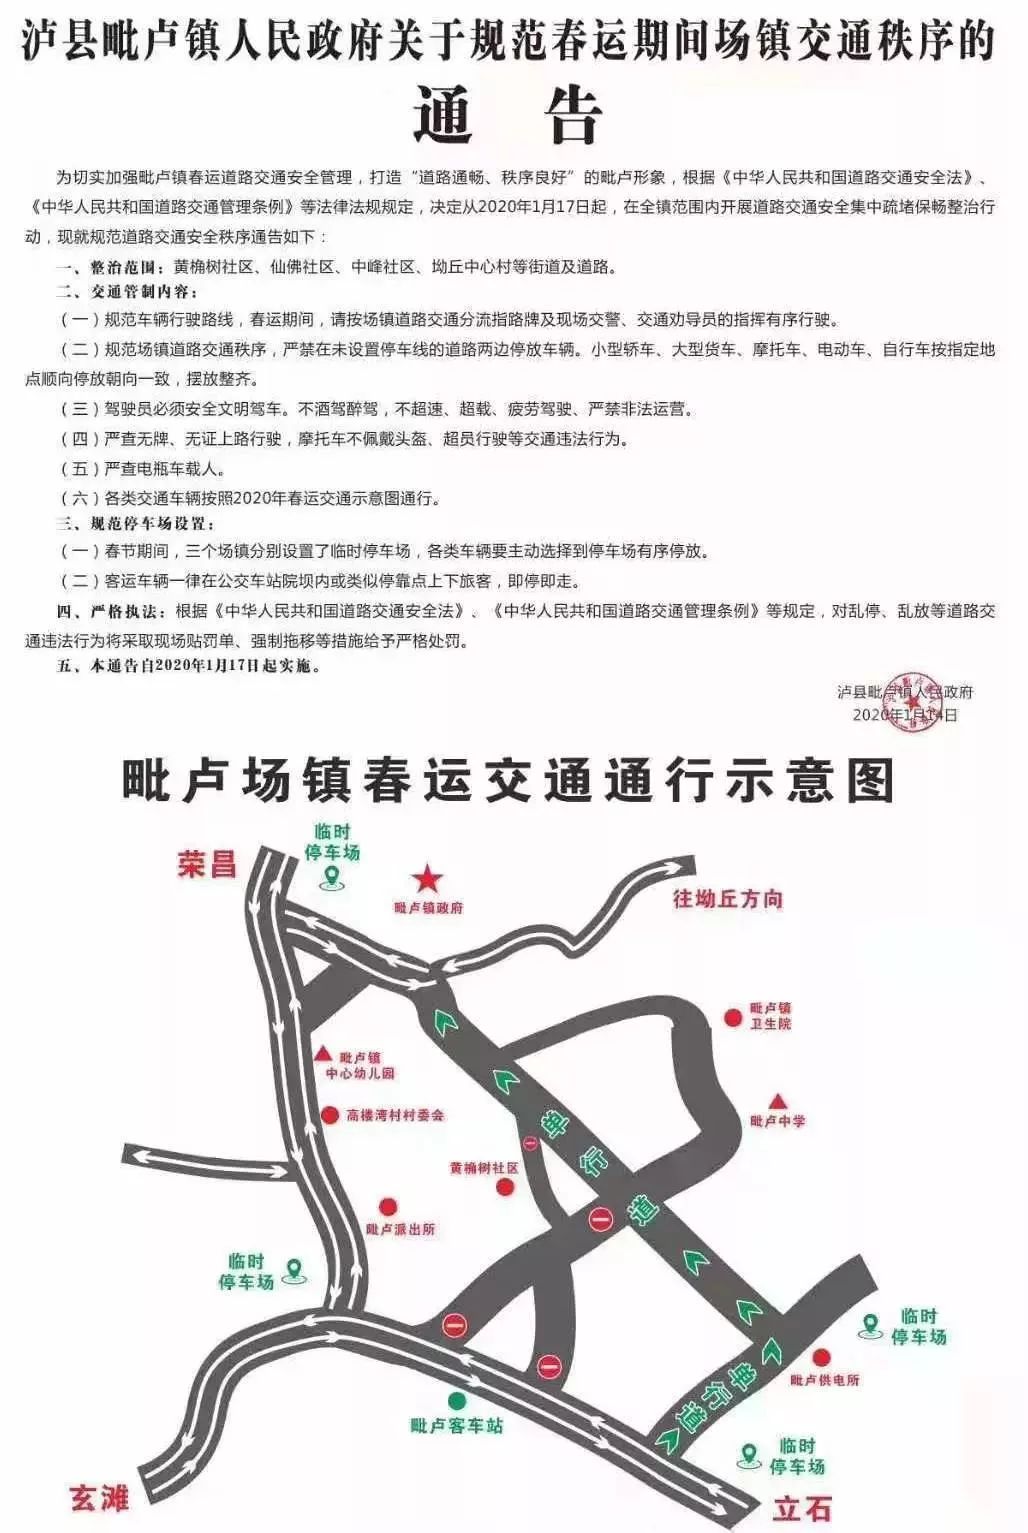 泸县得胜镇地图图片